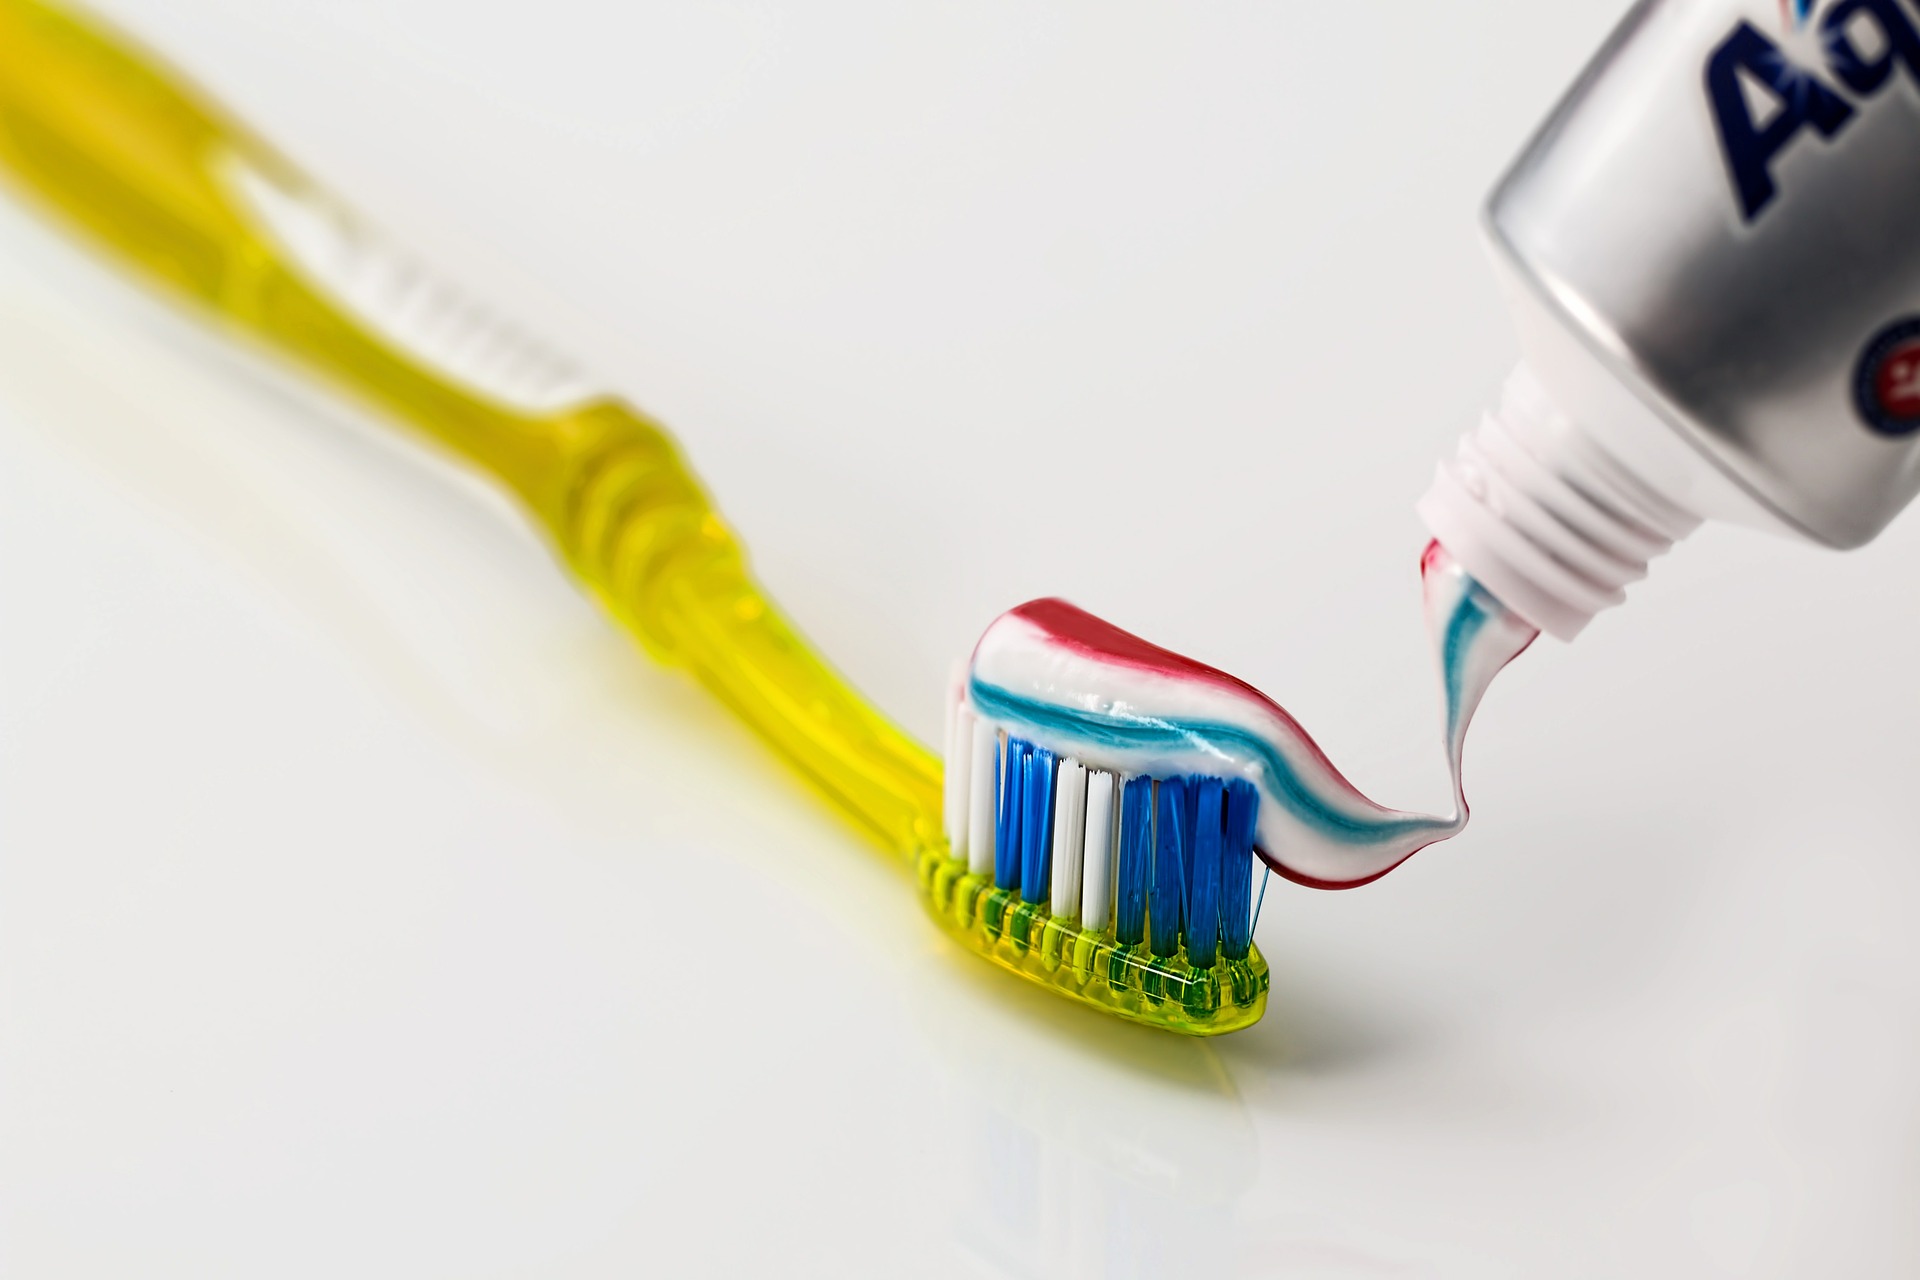 Nunca puede faltar un cepillo y pasta de dientes en el equipaje de mano. (Foto: Pixabay)